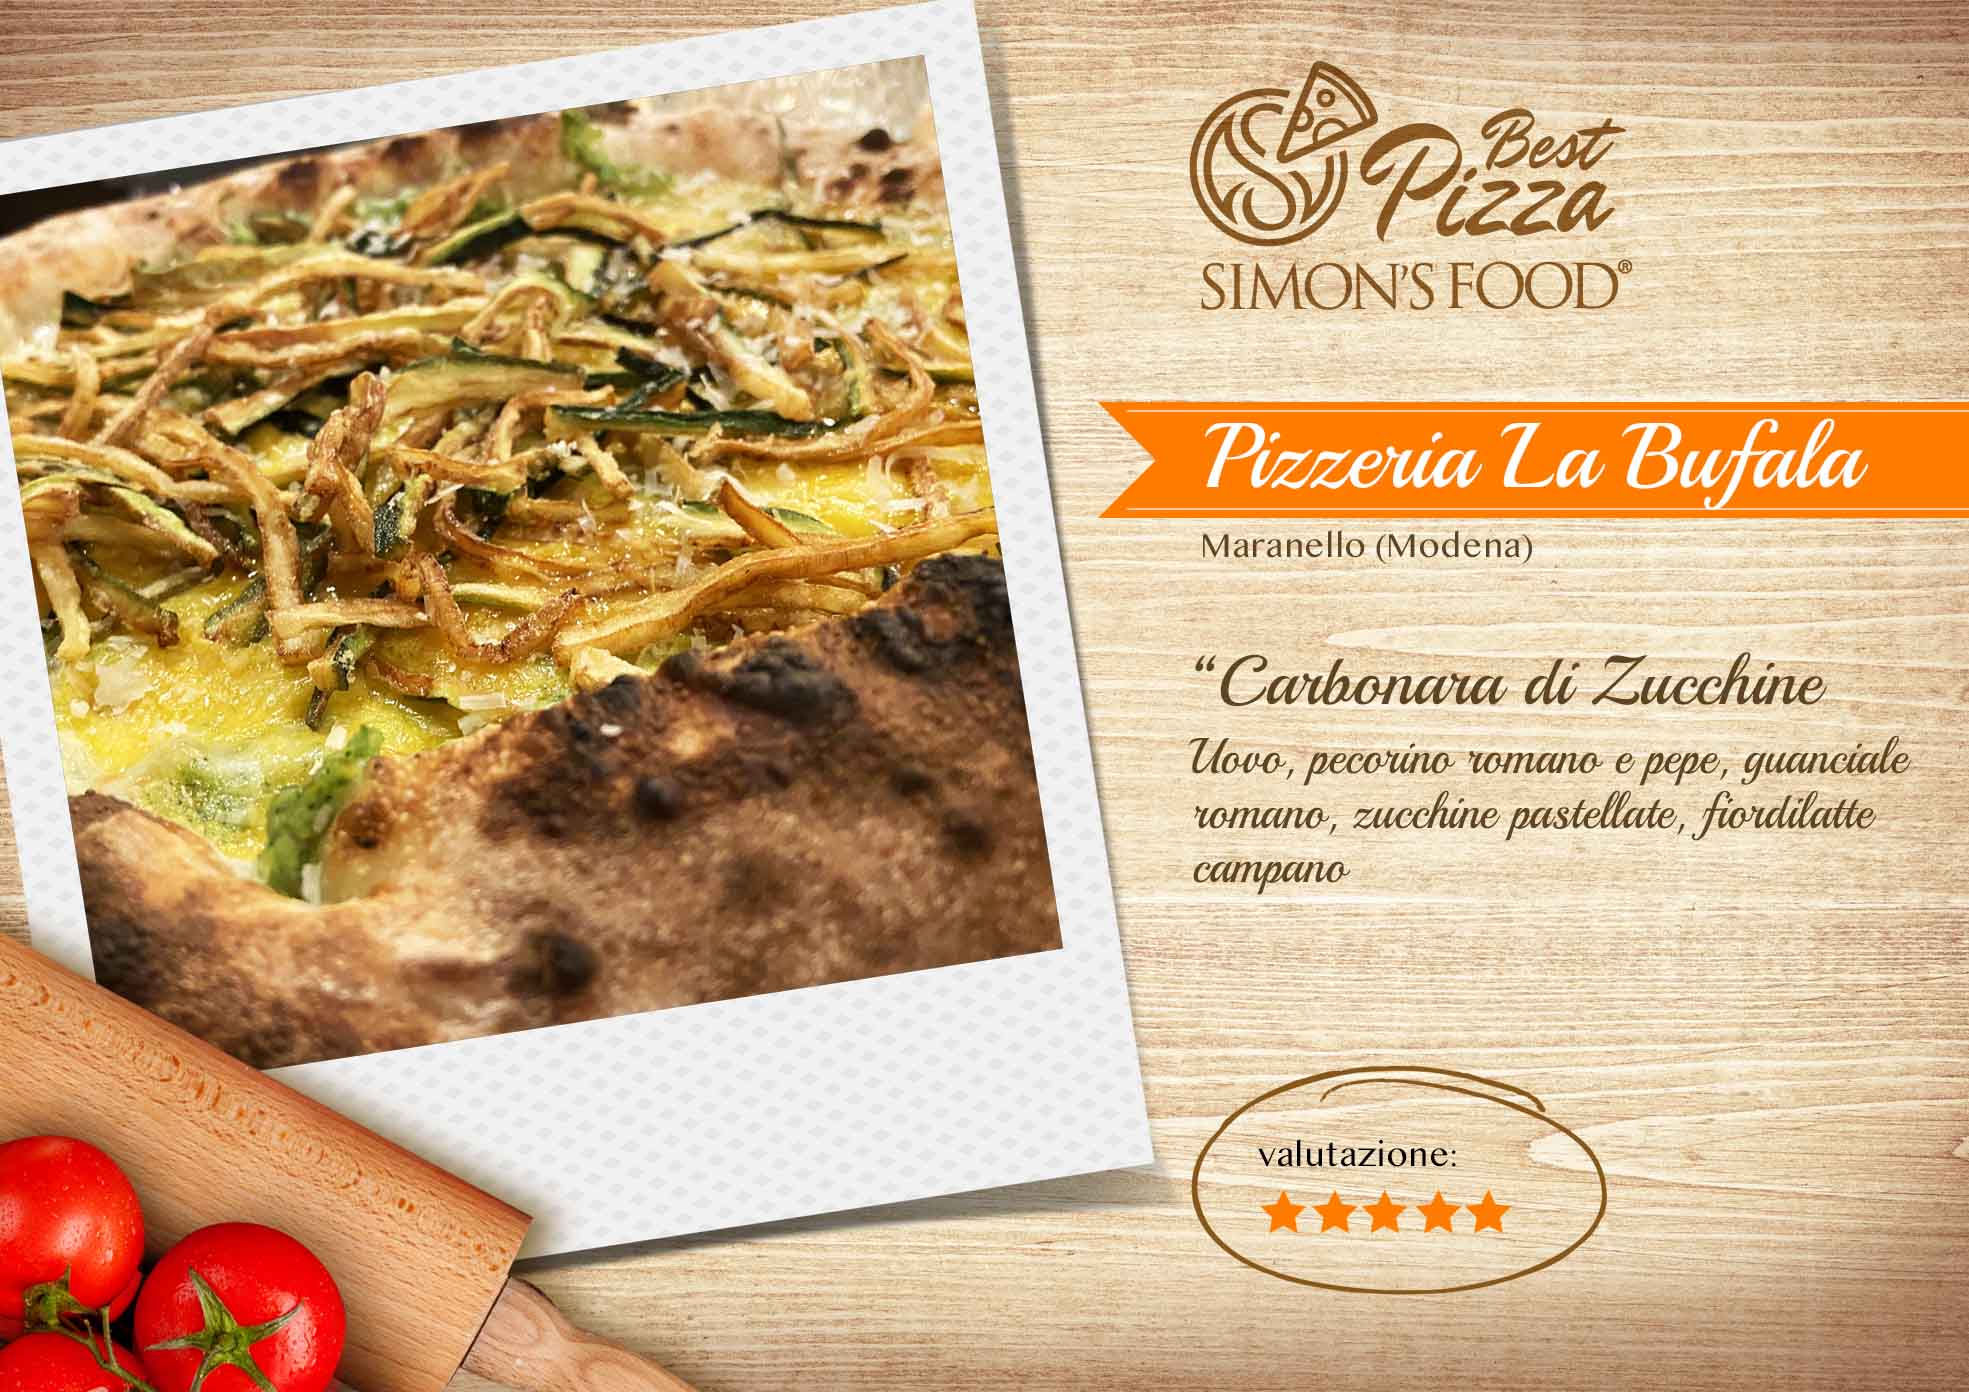 Pizzeria_Carbonara_di_zucchine_Labufala